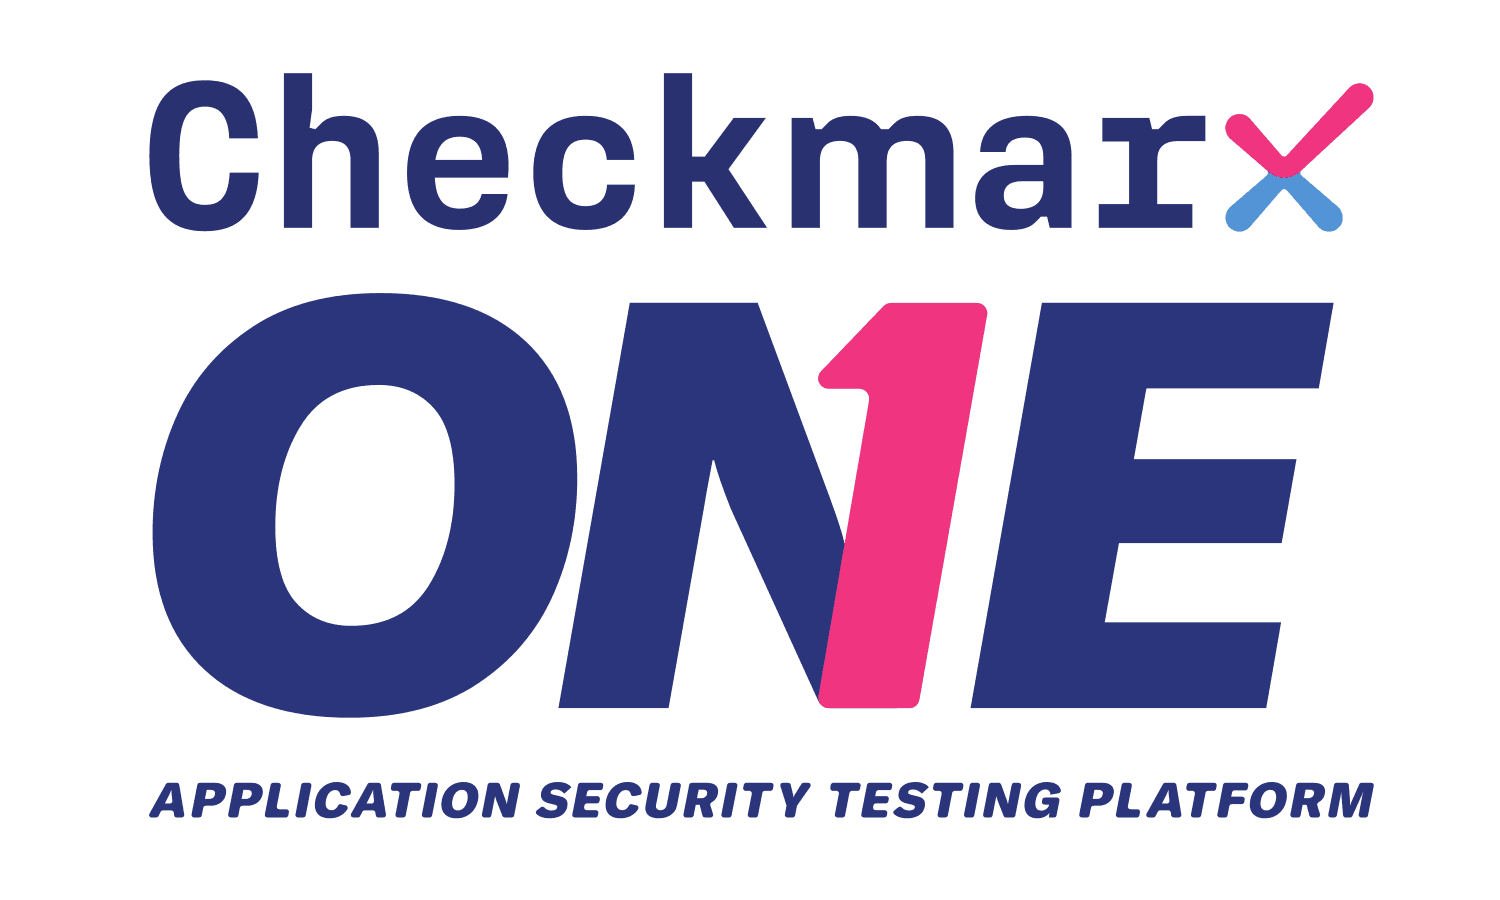 Checkmarx API Security